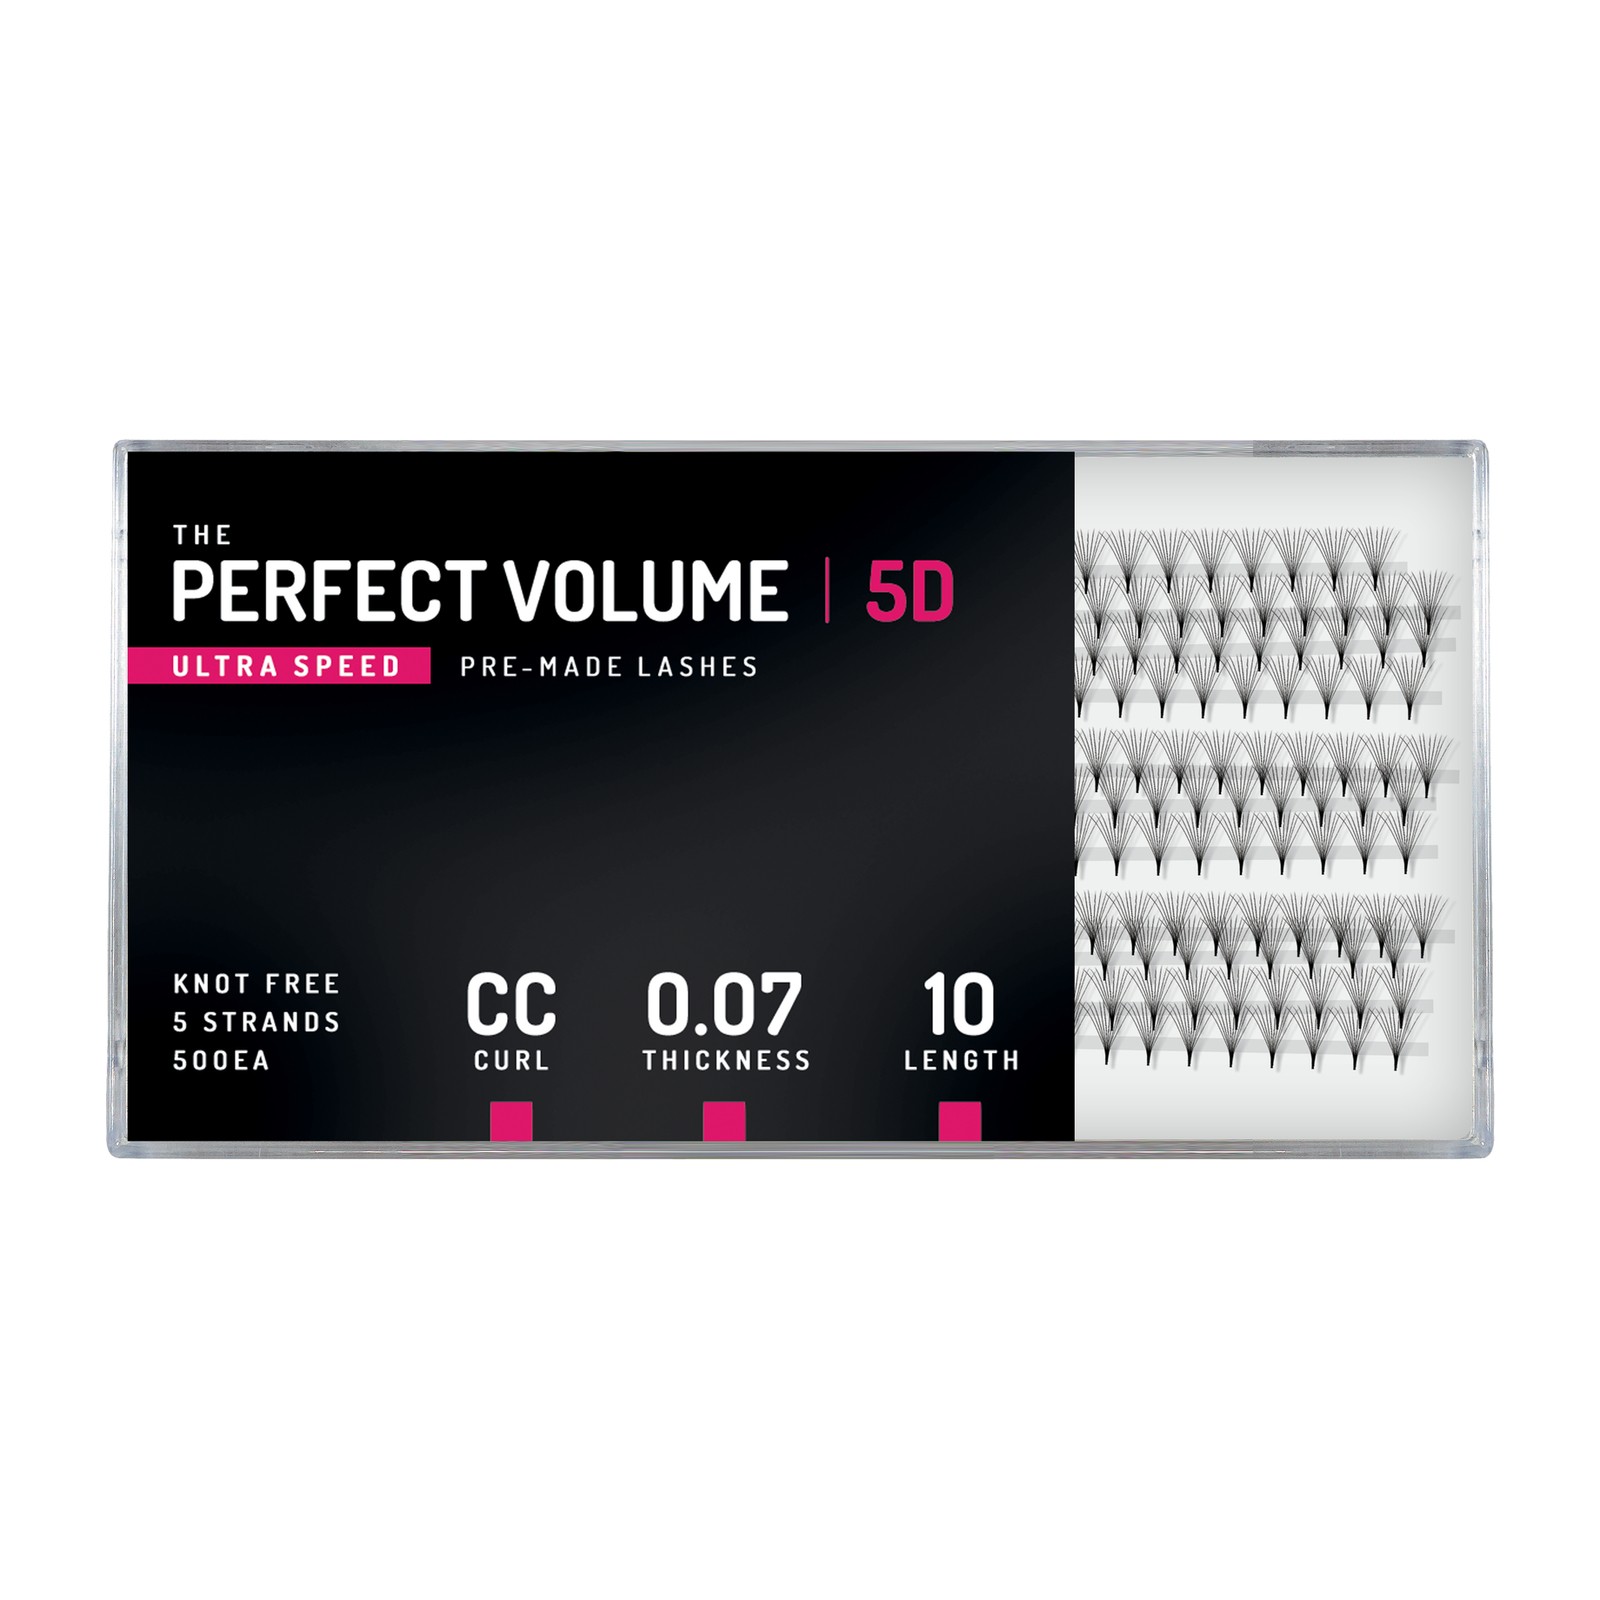 Volume Parfait Ultra Vitesse -  500 buchețele préfabriquées 5D -  10 mm, CC, 0,07 mm